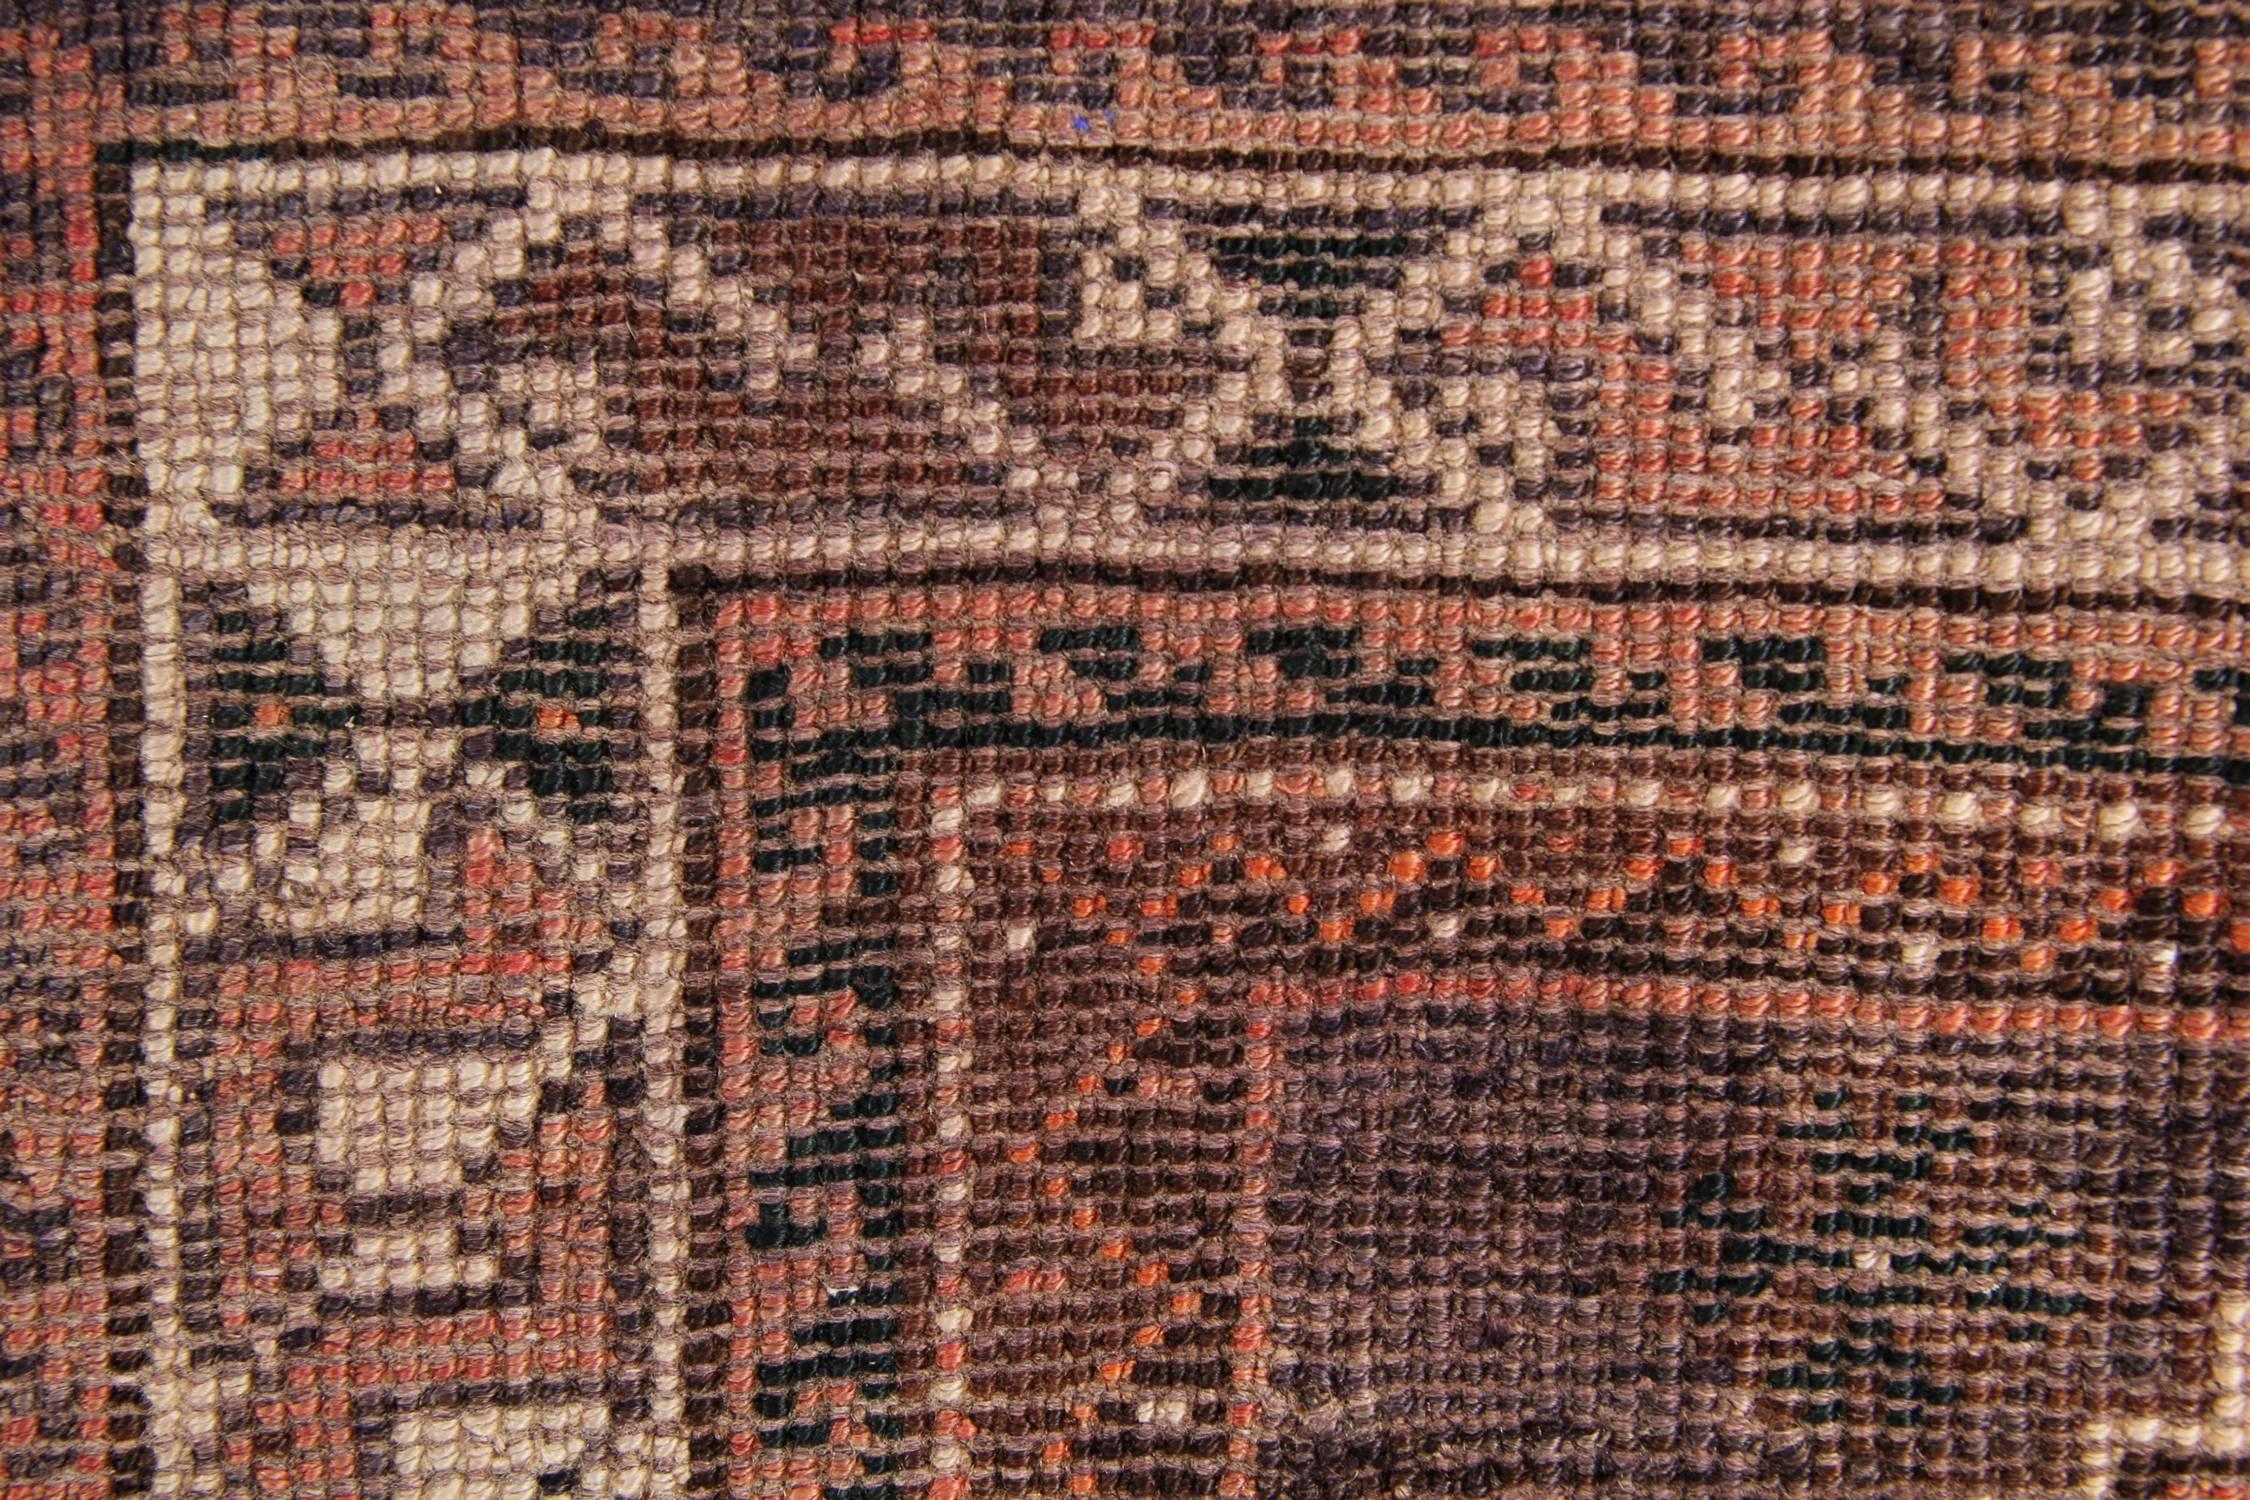 L'orange et le bleu constituent les couleurs principales de ce beau tapis en laine fabriqué à la main dans les années 1950. Le motif central présente un riche champ orange décoré d'un fantastique motif géométrique en médaillon et un motif